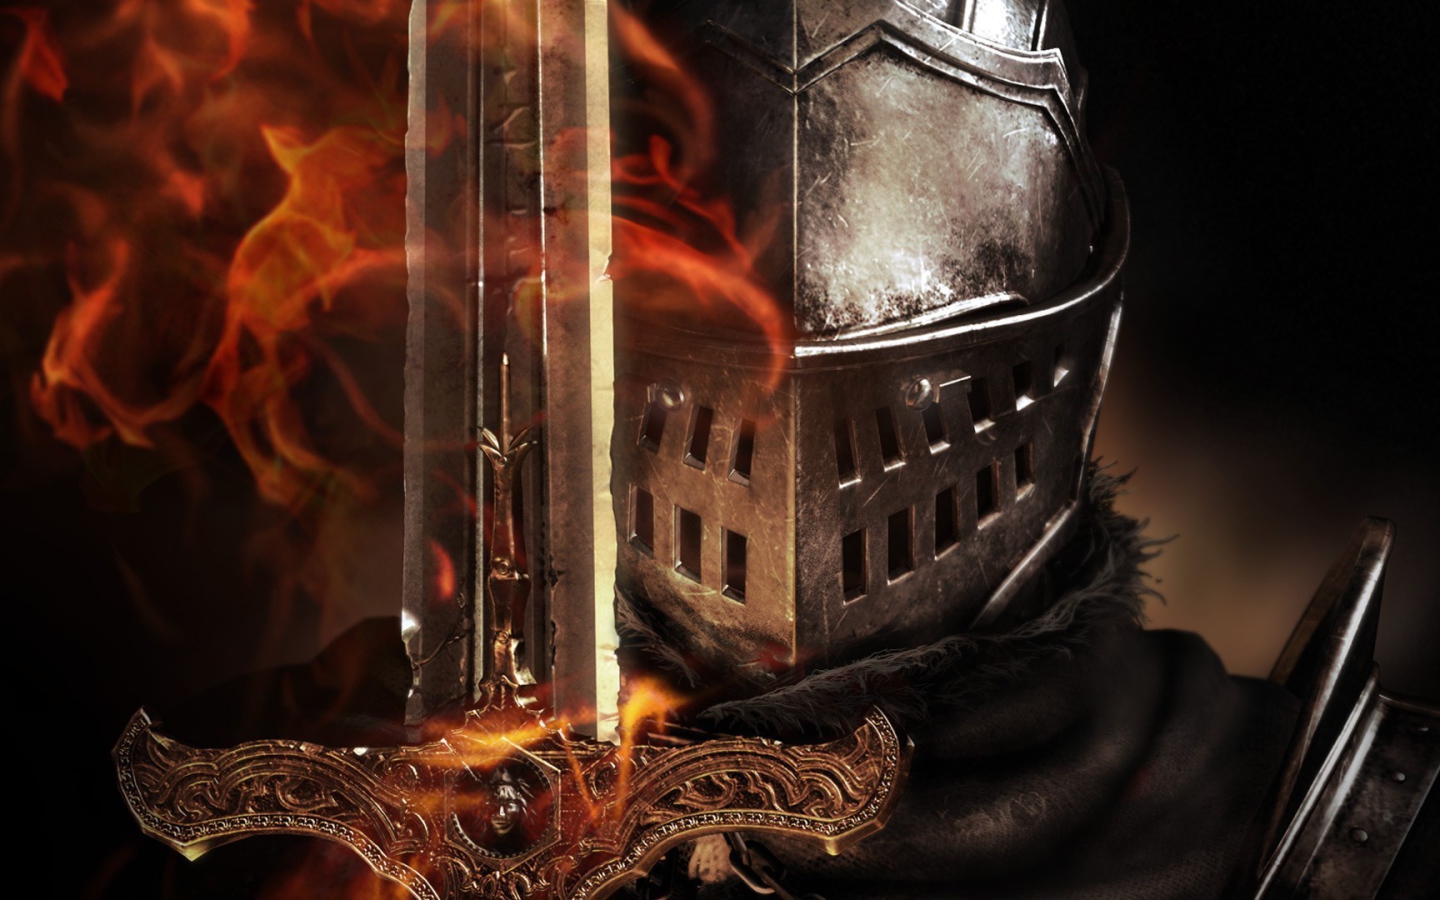 Призрачный меч в руке воина, игра Dark Souls